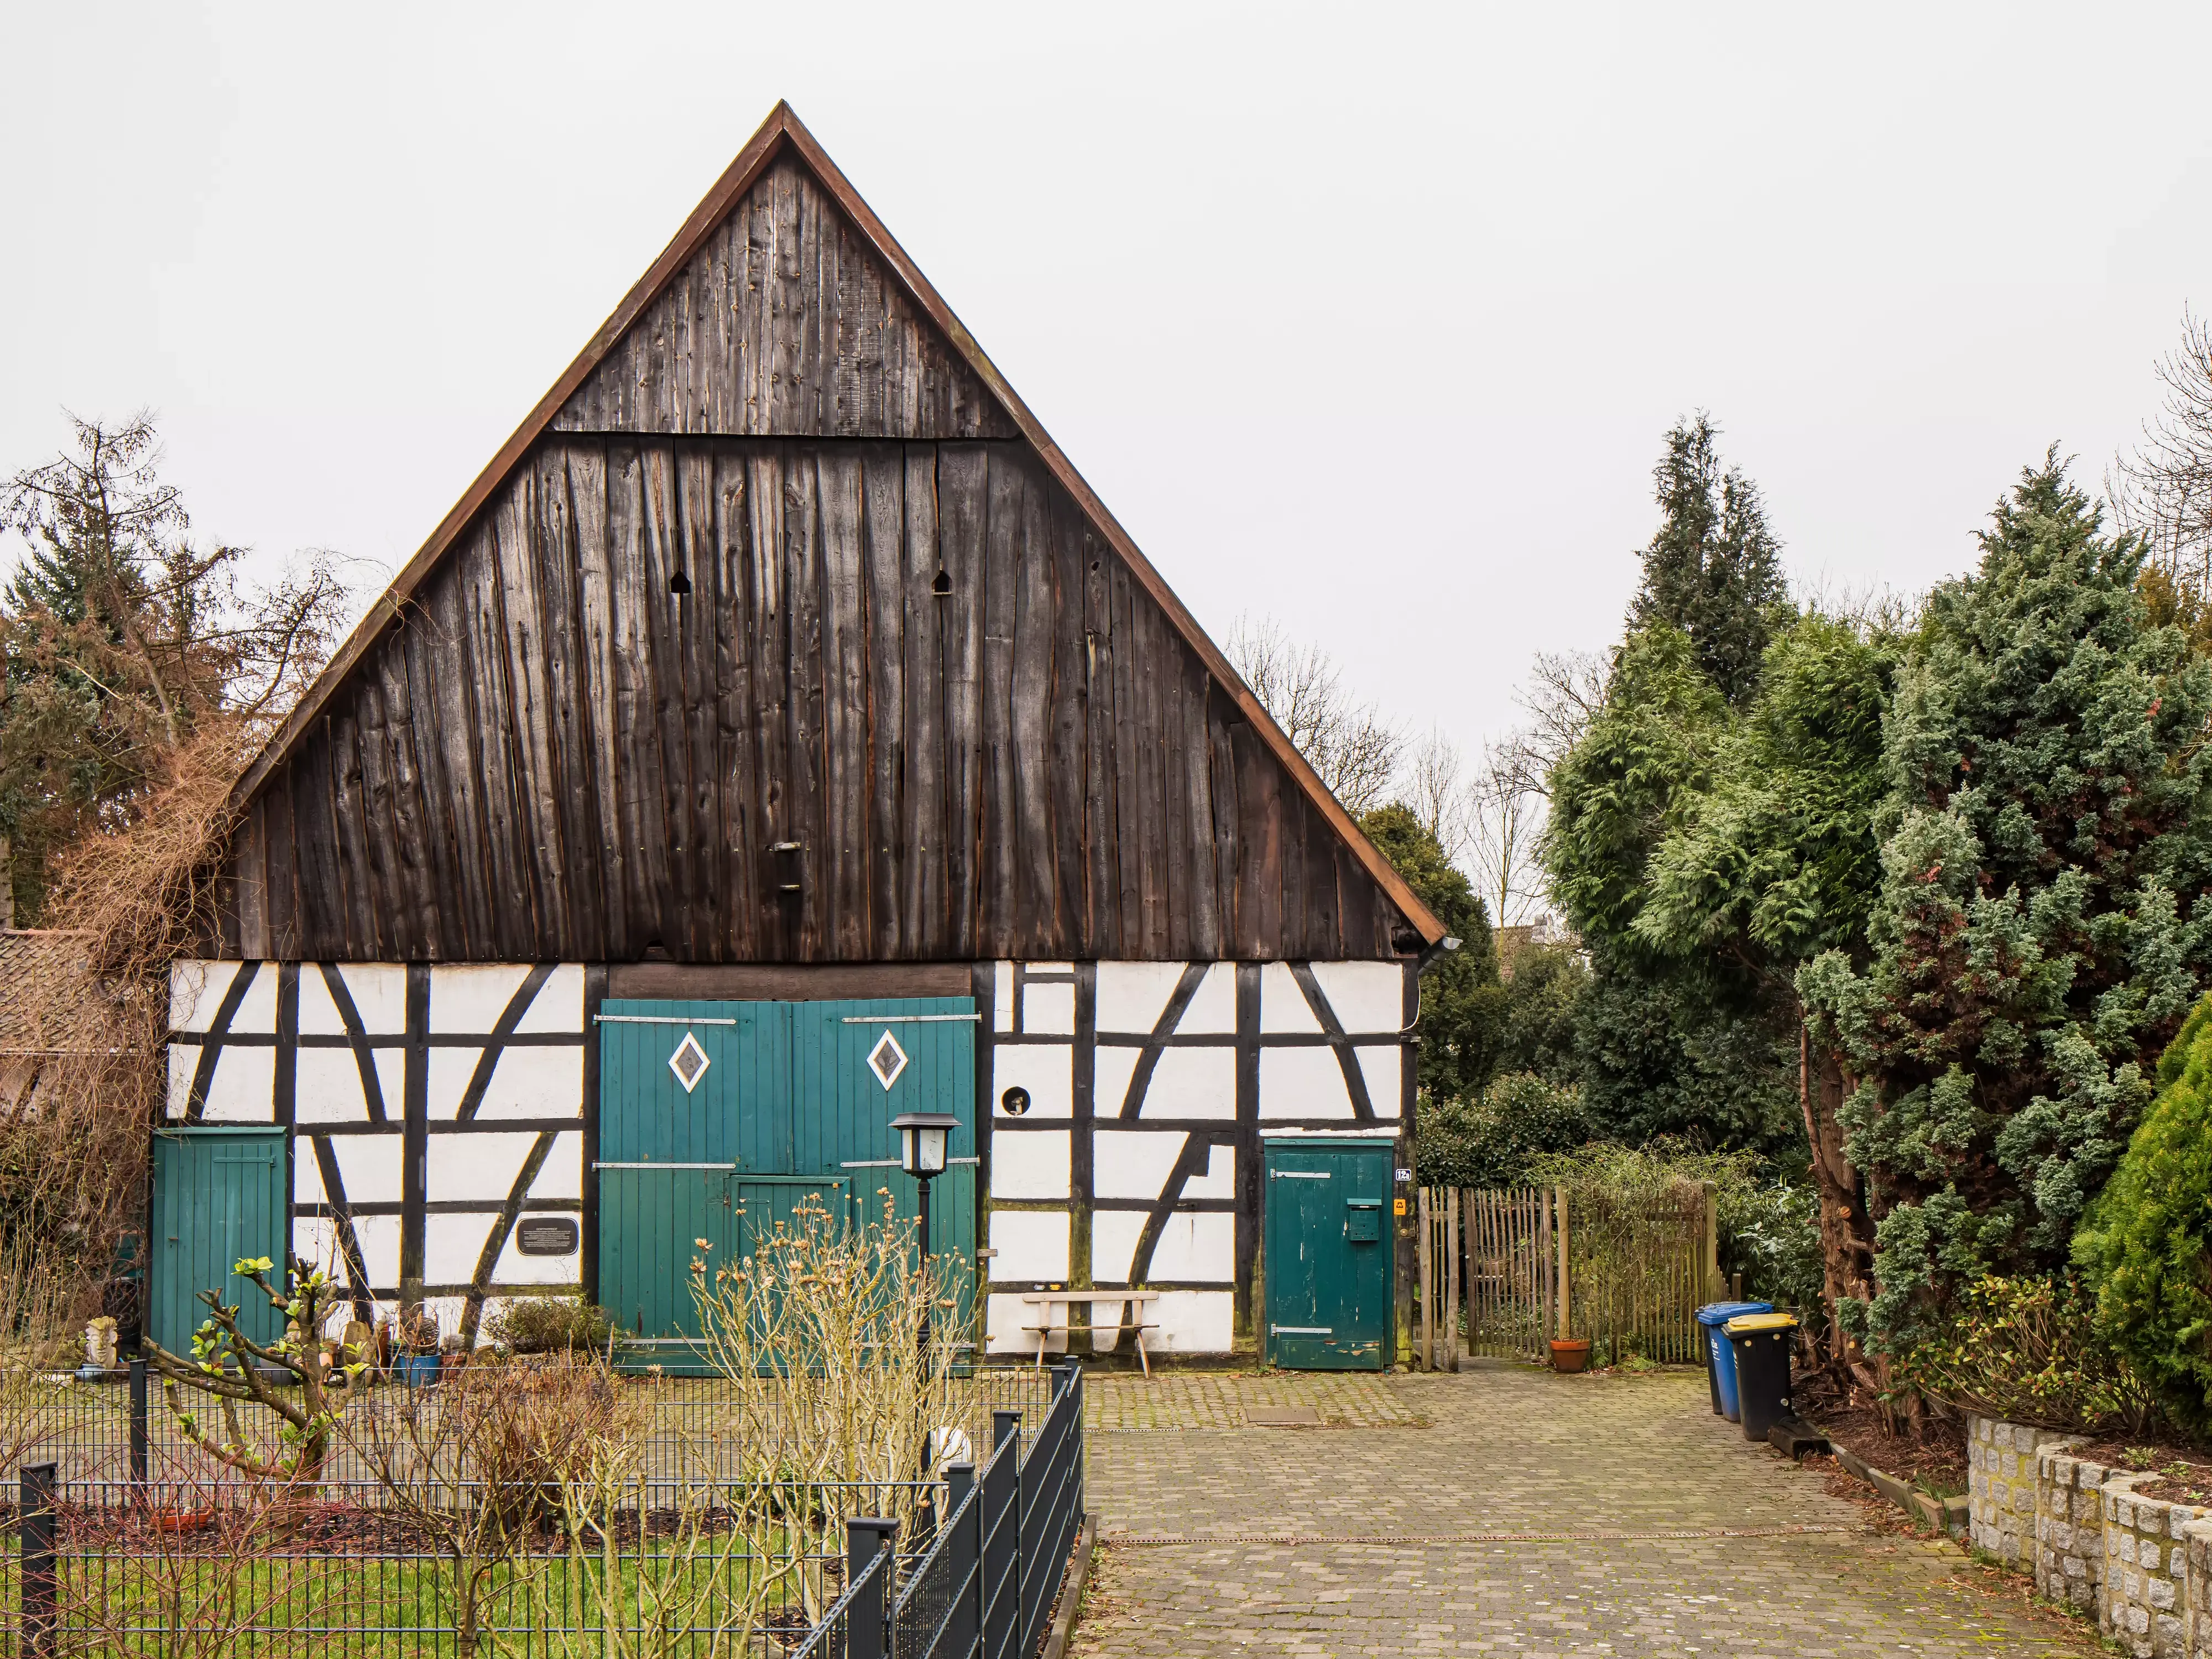 Maison à ossature traditionnelle en bois avec portes vertes et jardin environnant.